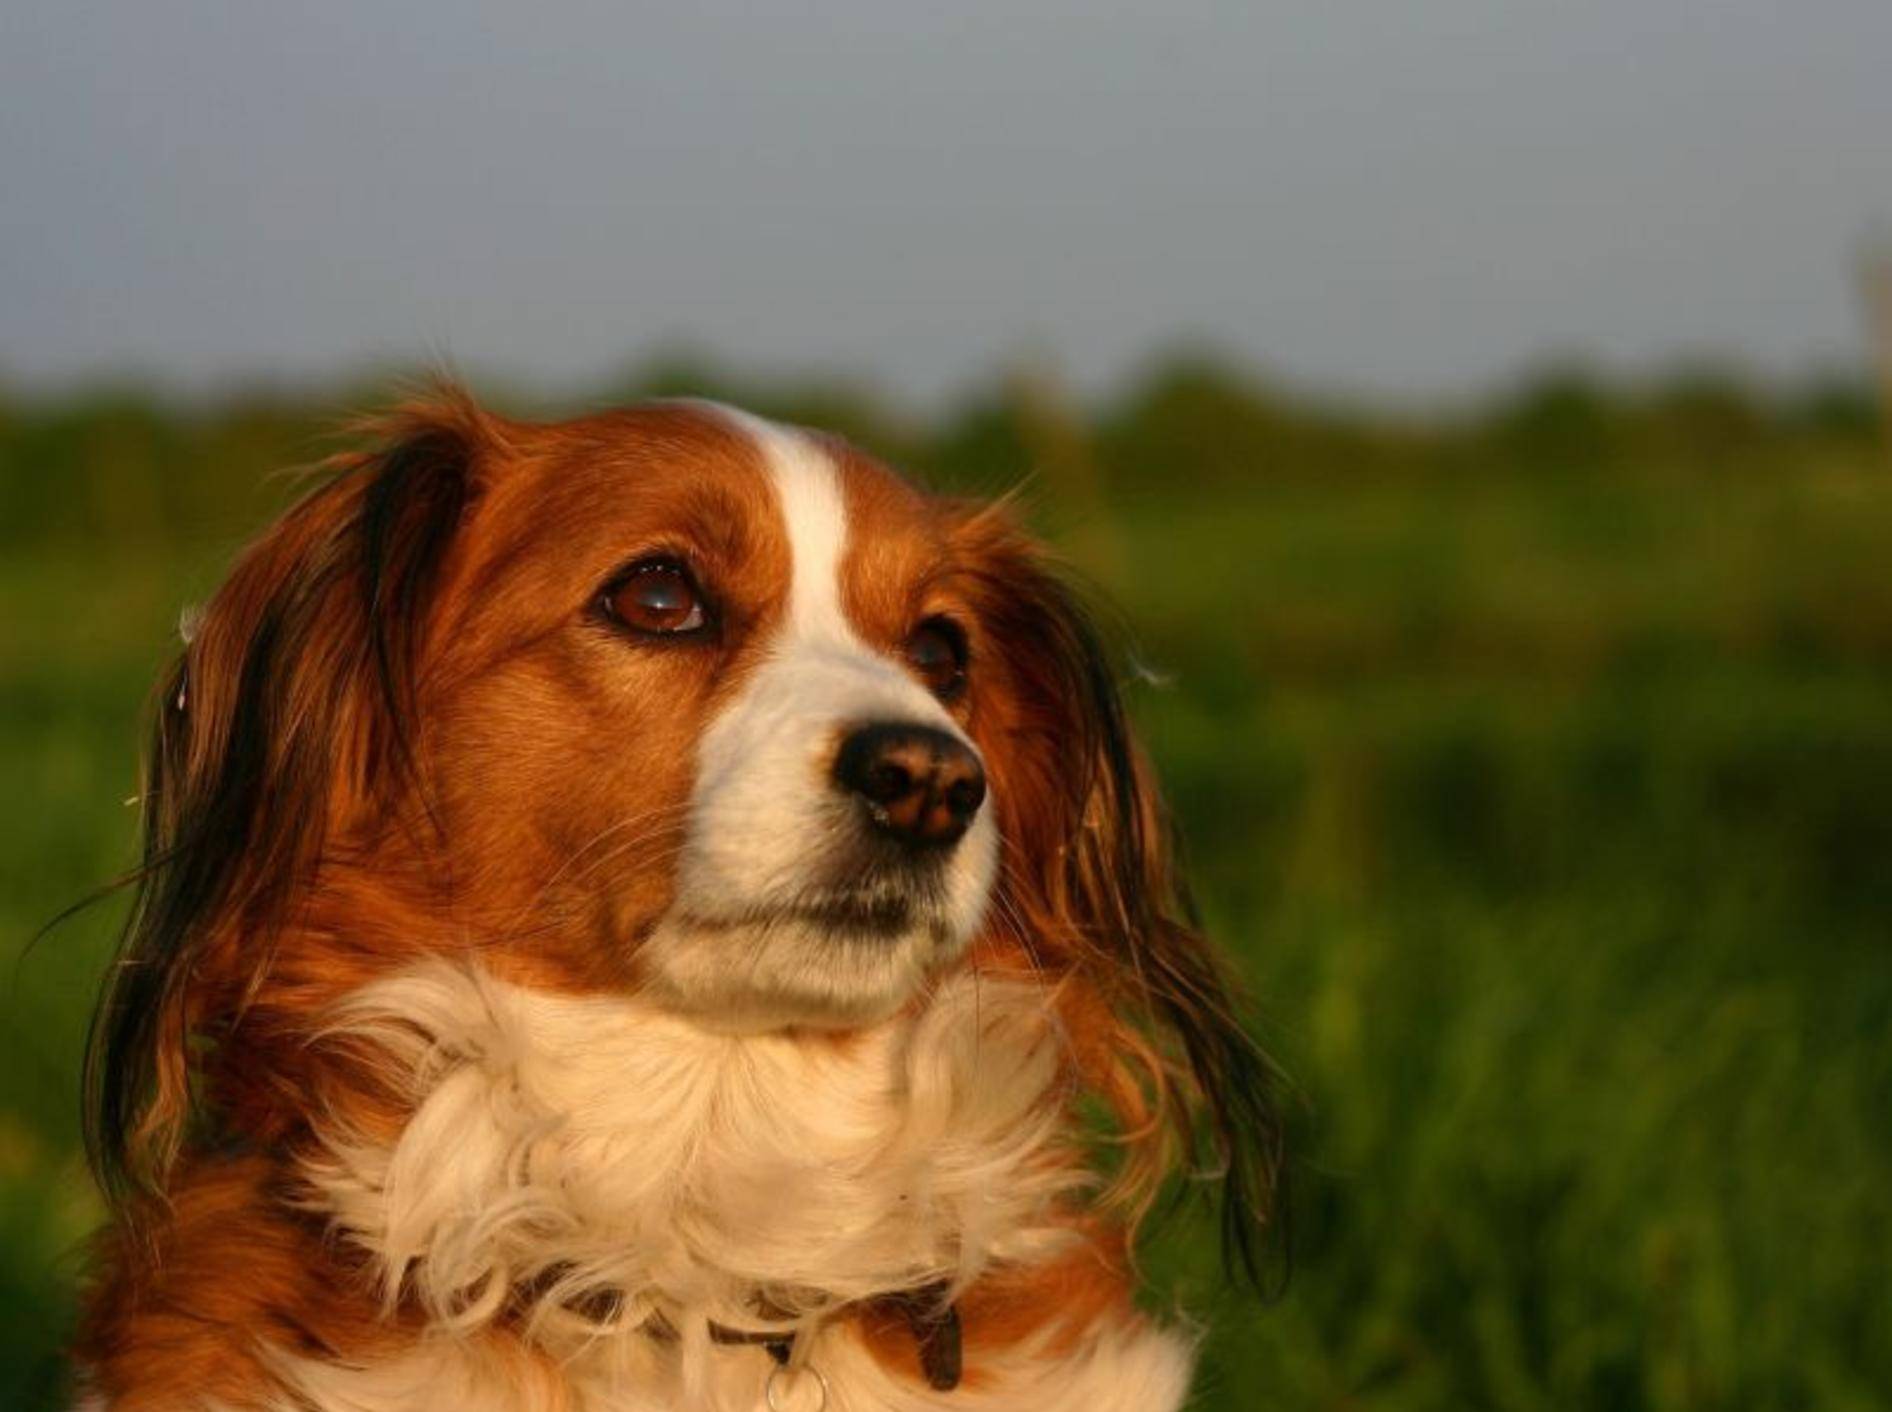 Beliebter Familienhund: Der Kooikerhondje gilt als sanftmütig und freundlich – Bild: Shutterstock / E.-Spek